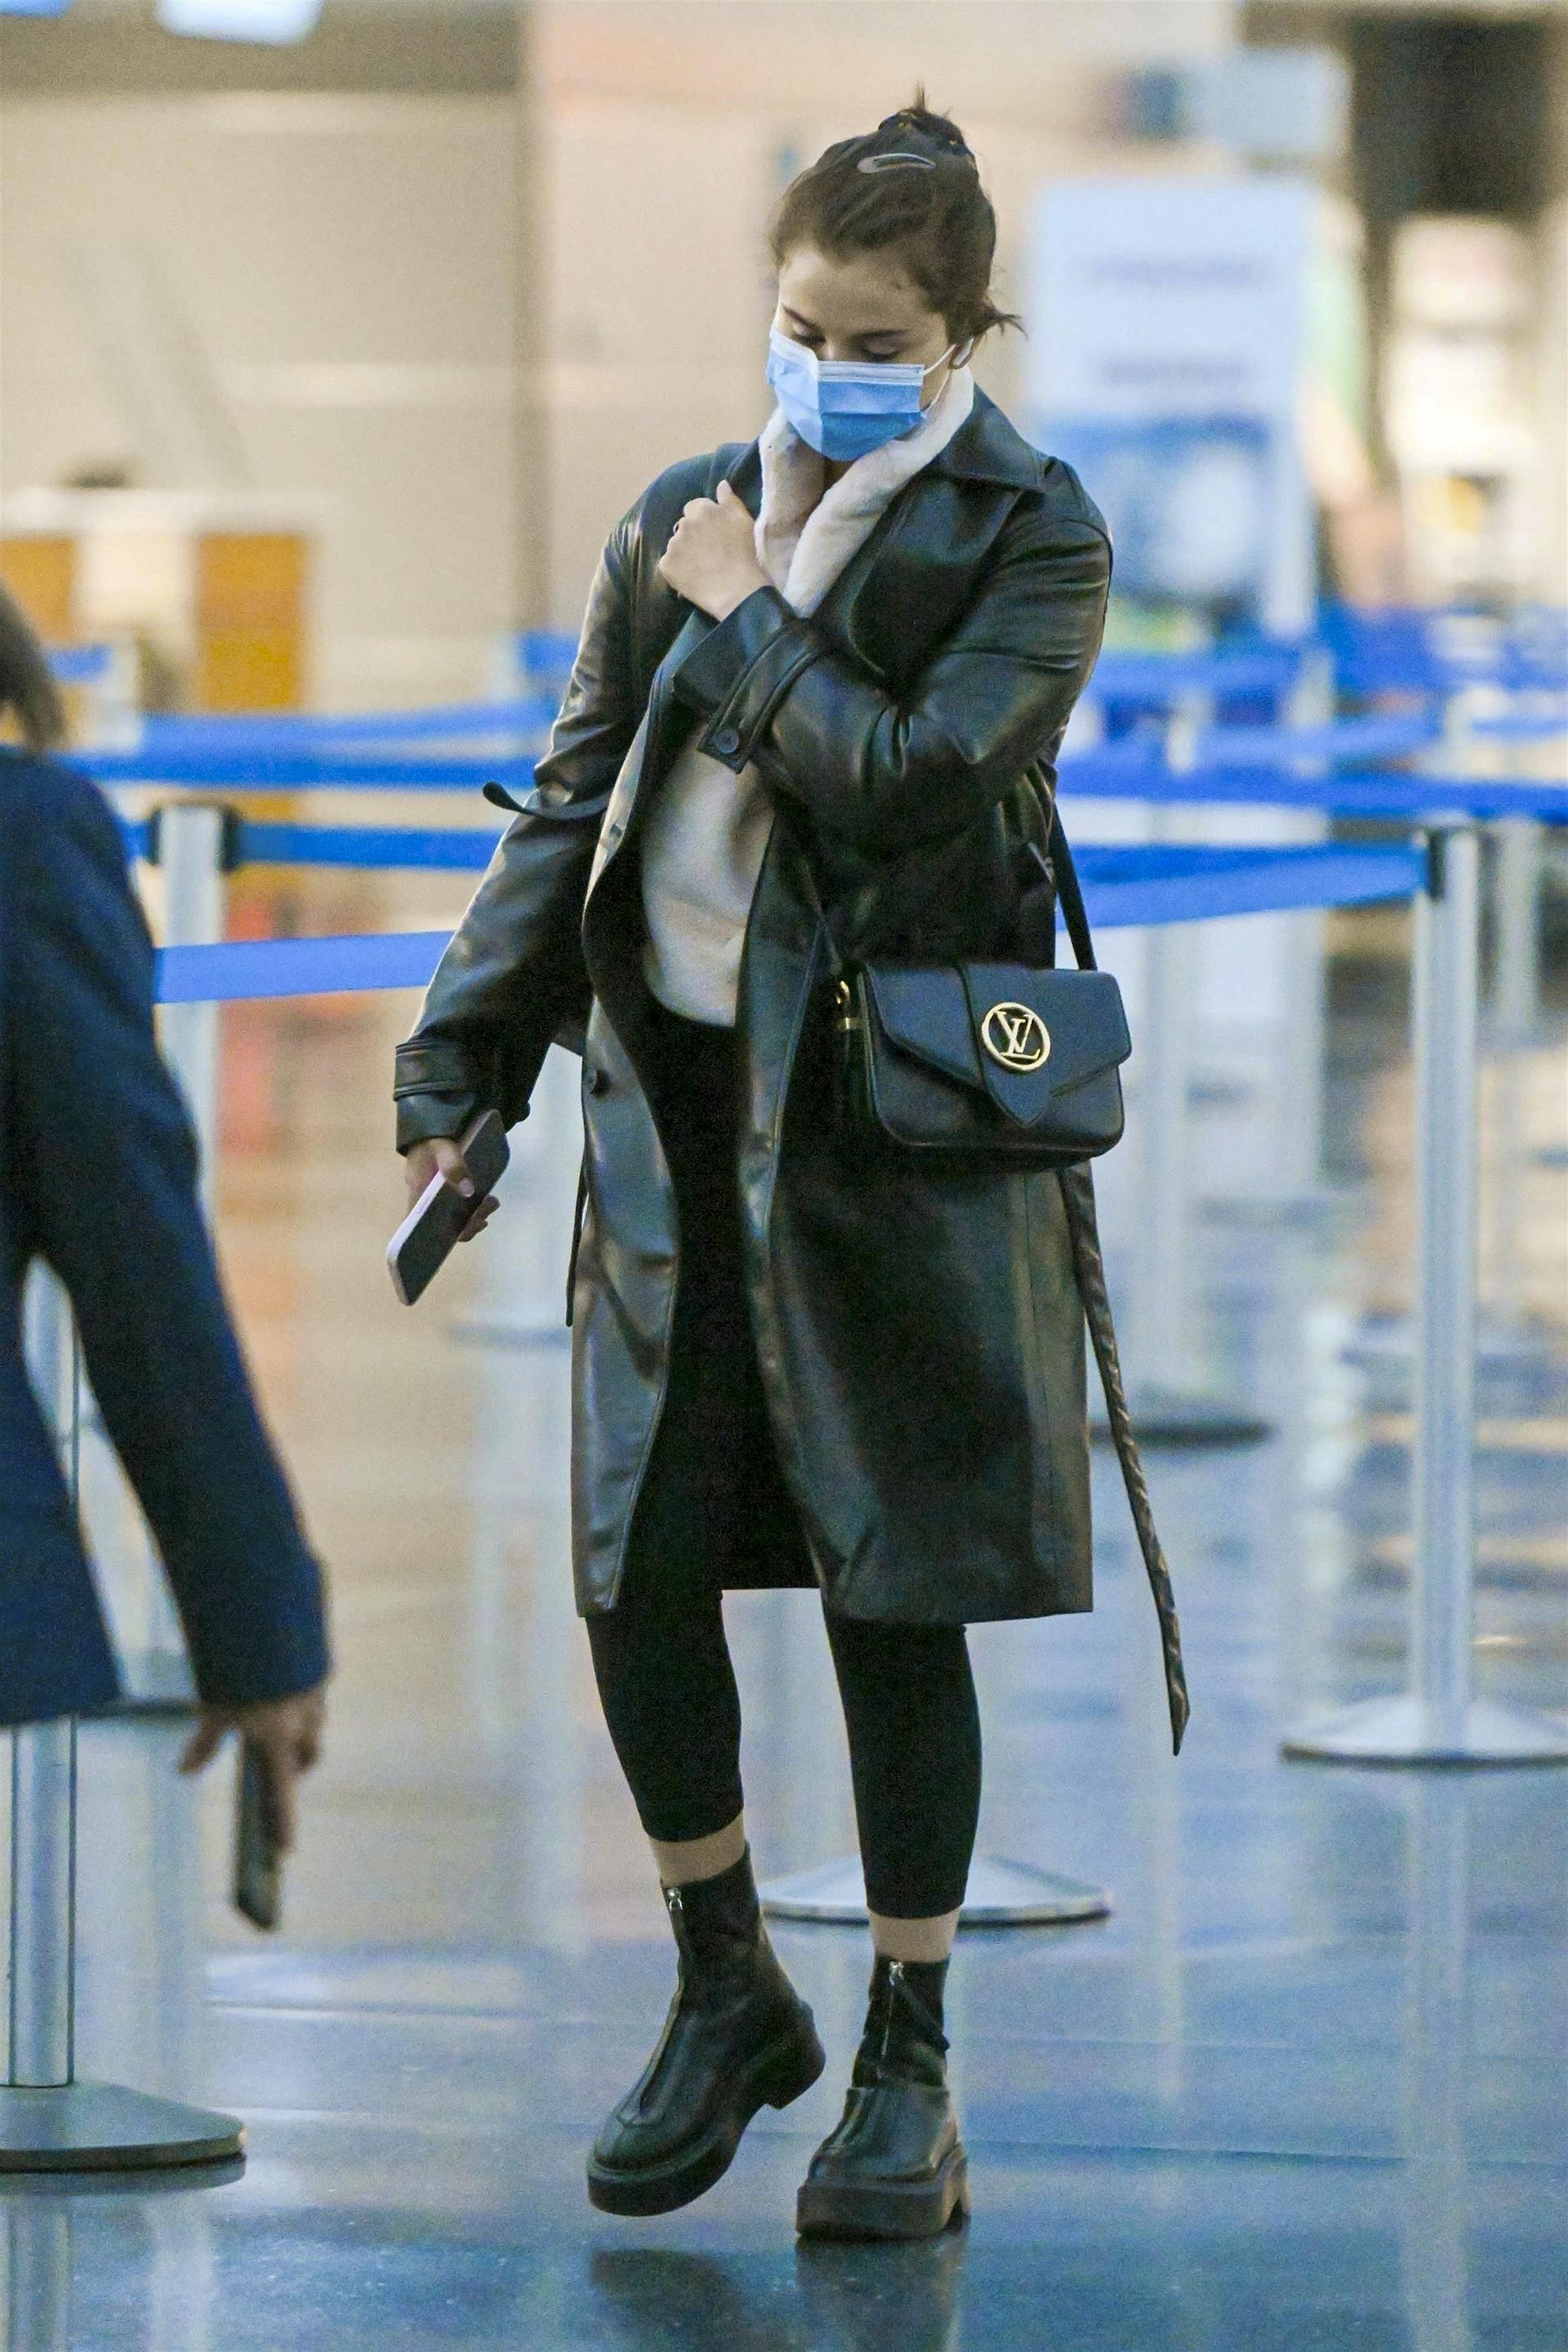 Selena Gomez intentó mantener el bajo perfil mientras caminaba por el aeropuerto JFK de Nueva York. La artista cumplió con compromisos laborales. Lució un look cómodo para viajar, calzas negras que combinó con su tapado, borcegos y cartera, y un buzo color clarito